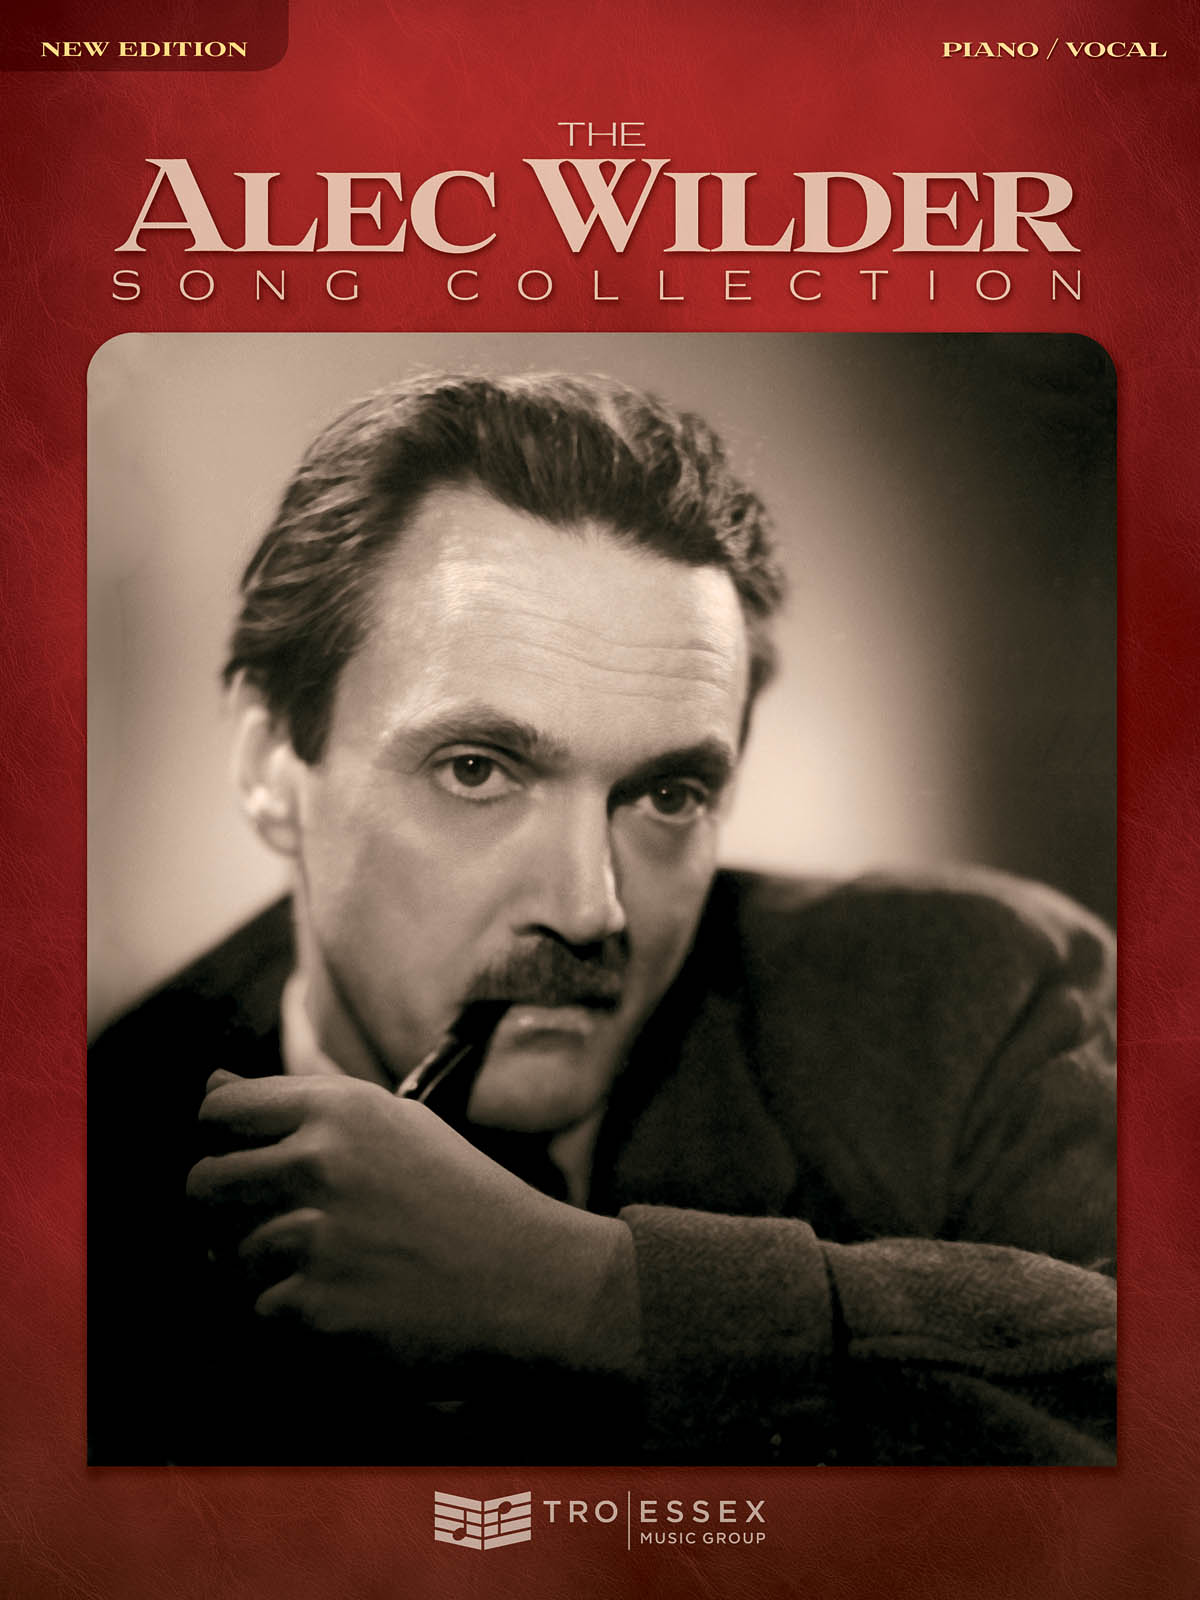 The Alec Wilder Song Collection - noty pro zpěv, klavír s akordy pro kytaru